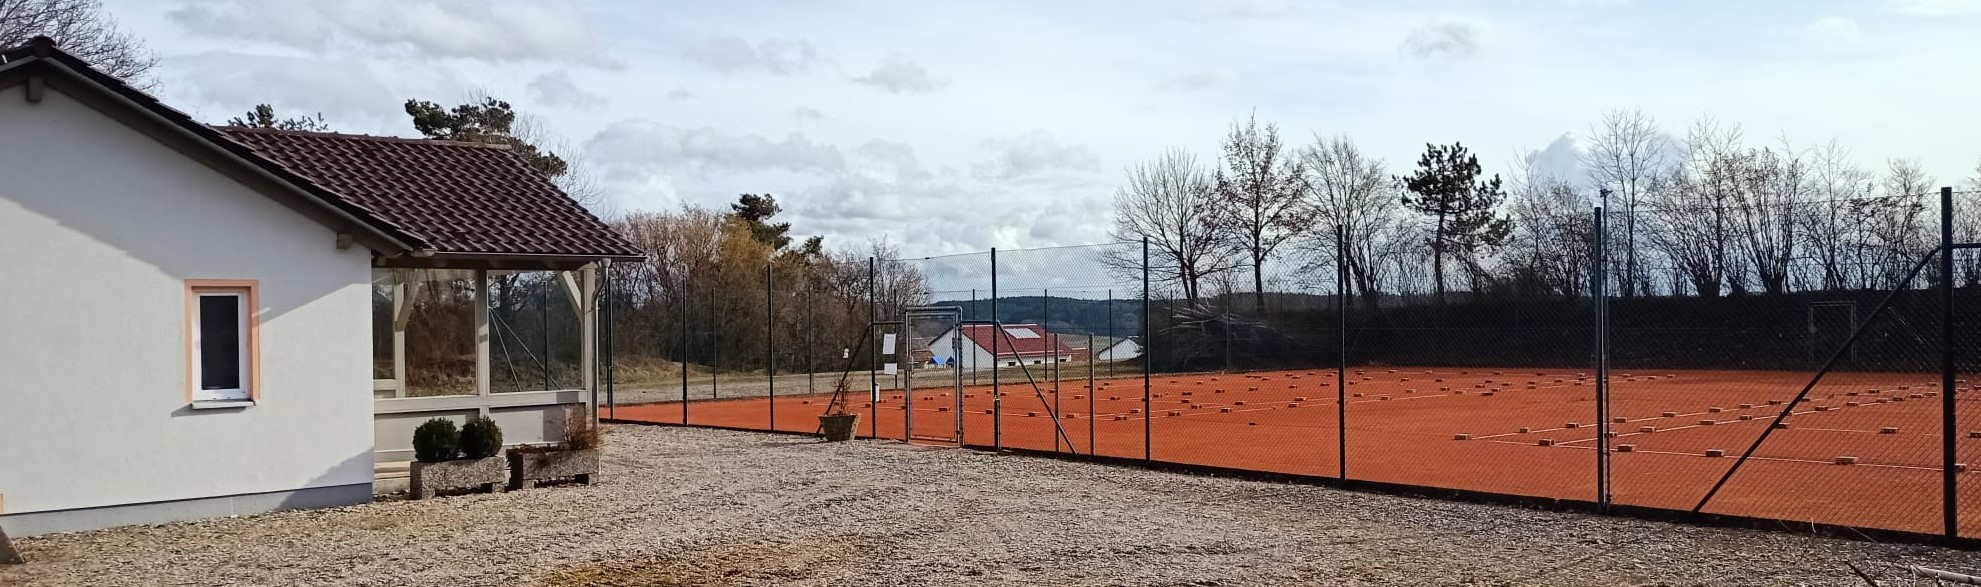 tennisplatz_2